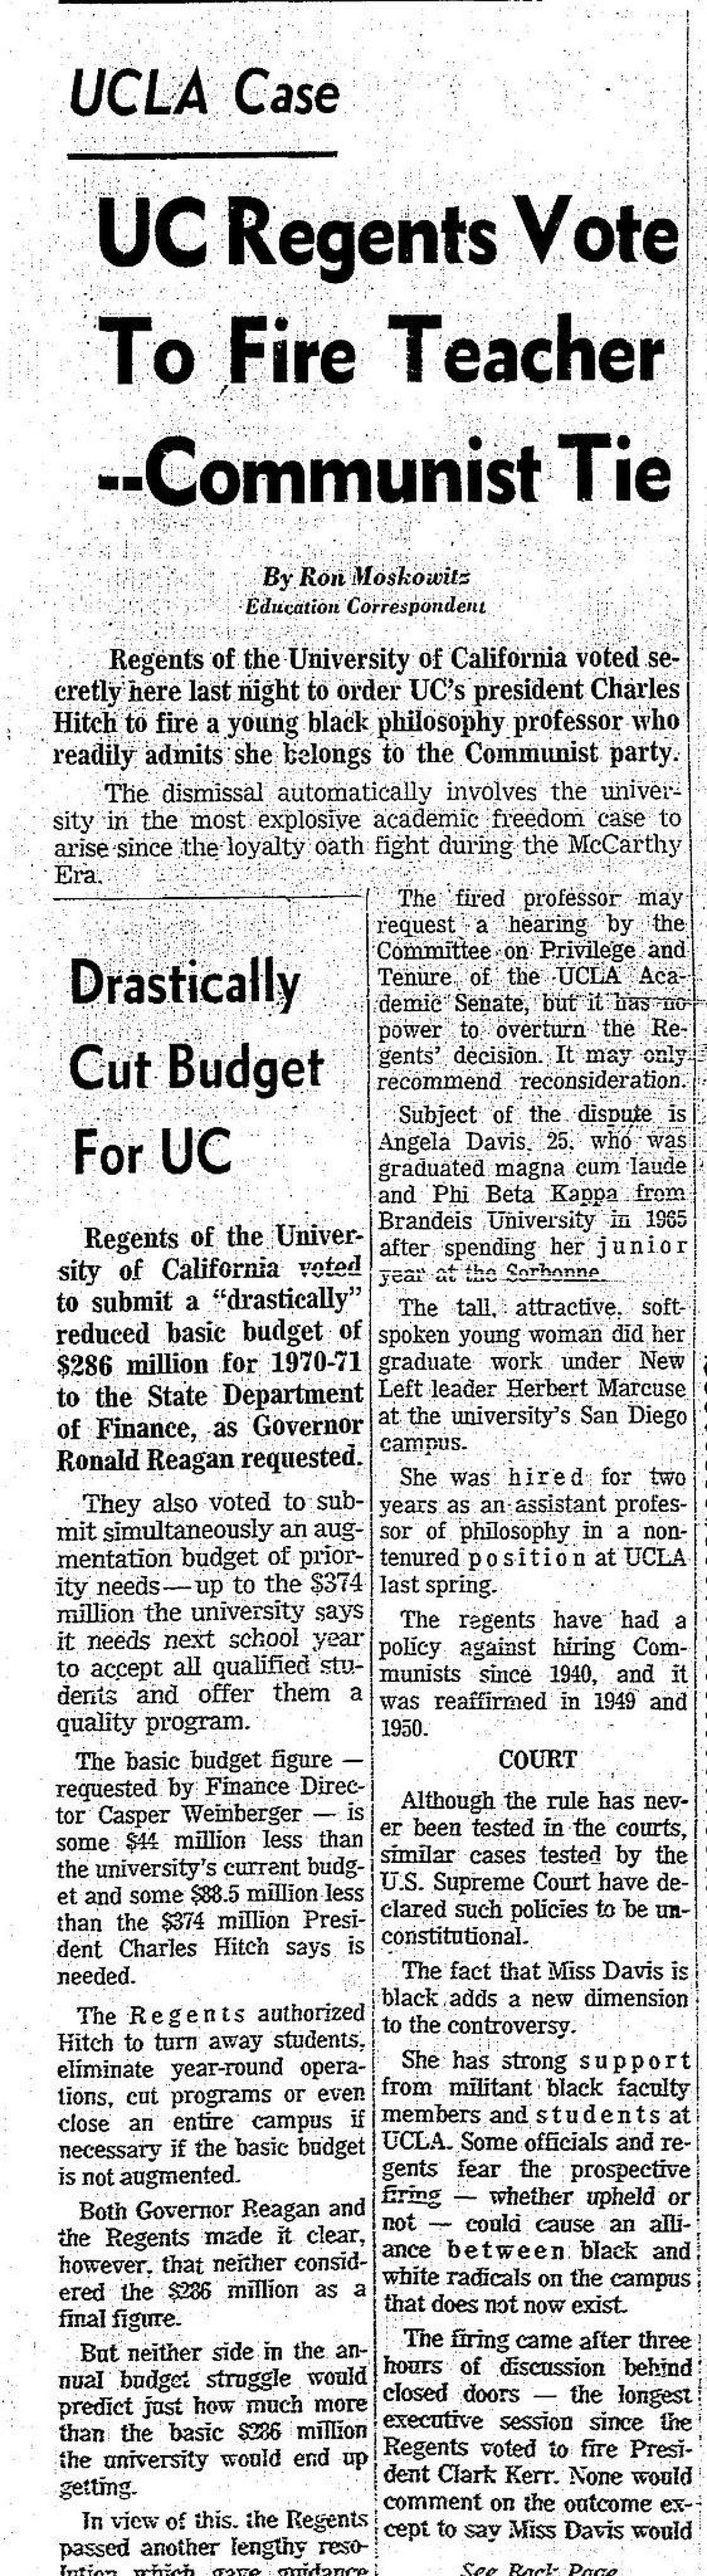 1969年9月20日，纪事报报道加州大学校董会建议安吉拉·戴维斯被解雇